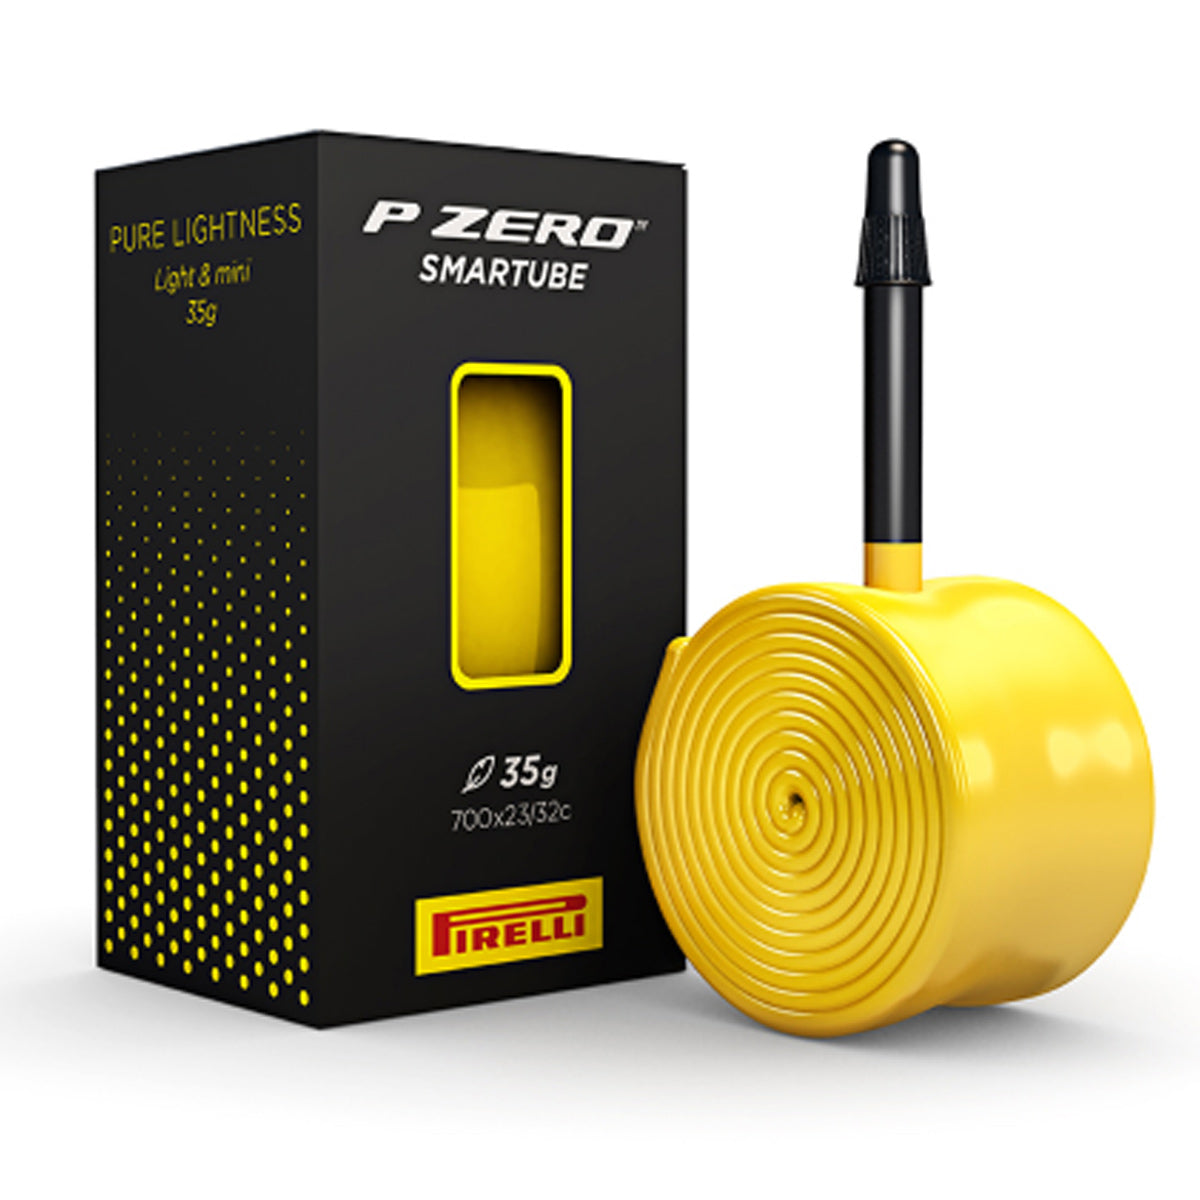 Pirelli Pzero Smartube Inner Tube 700x2332 60 Mm